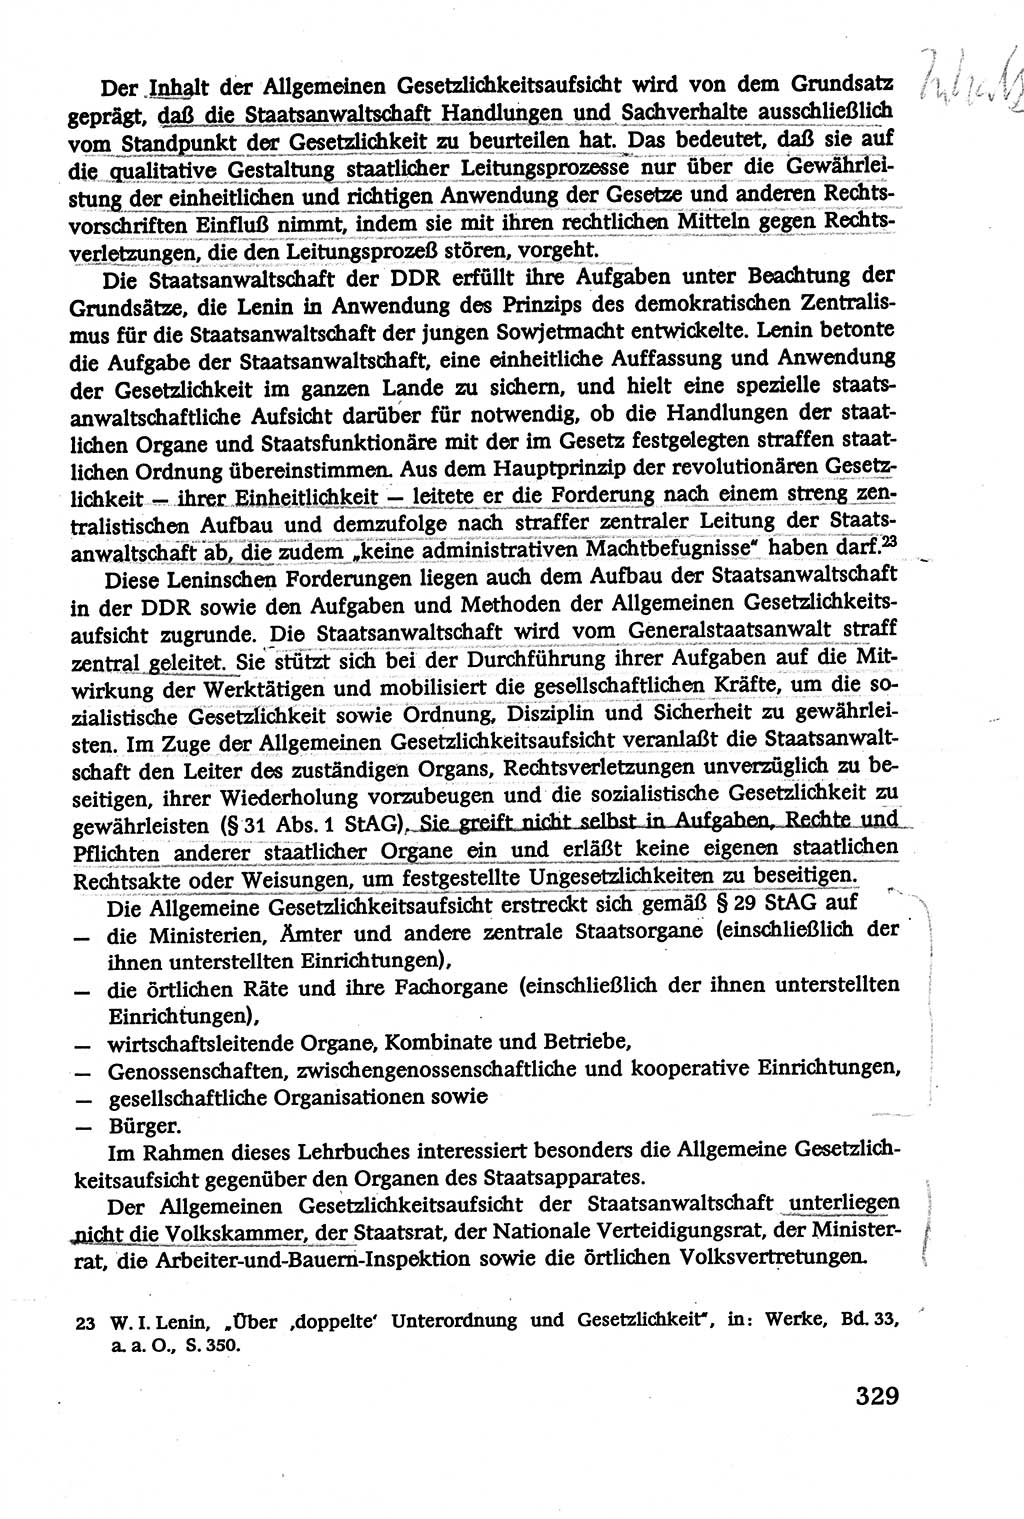 Verwaltungsrecht [Deutsche Demokratische Republik (DDR)], Lehrbuch 1979, Seite 329 (Verw.-R. DDR Lb. 1979, S. 329)